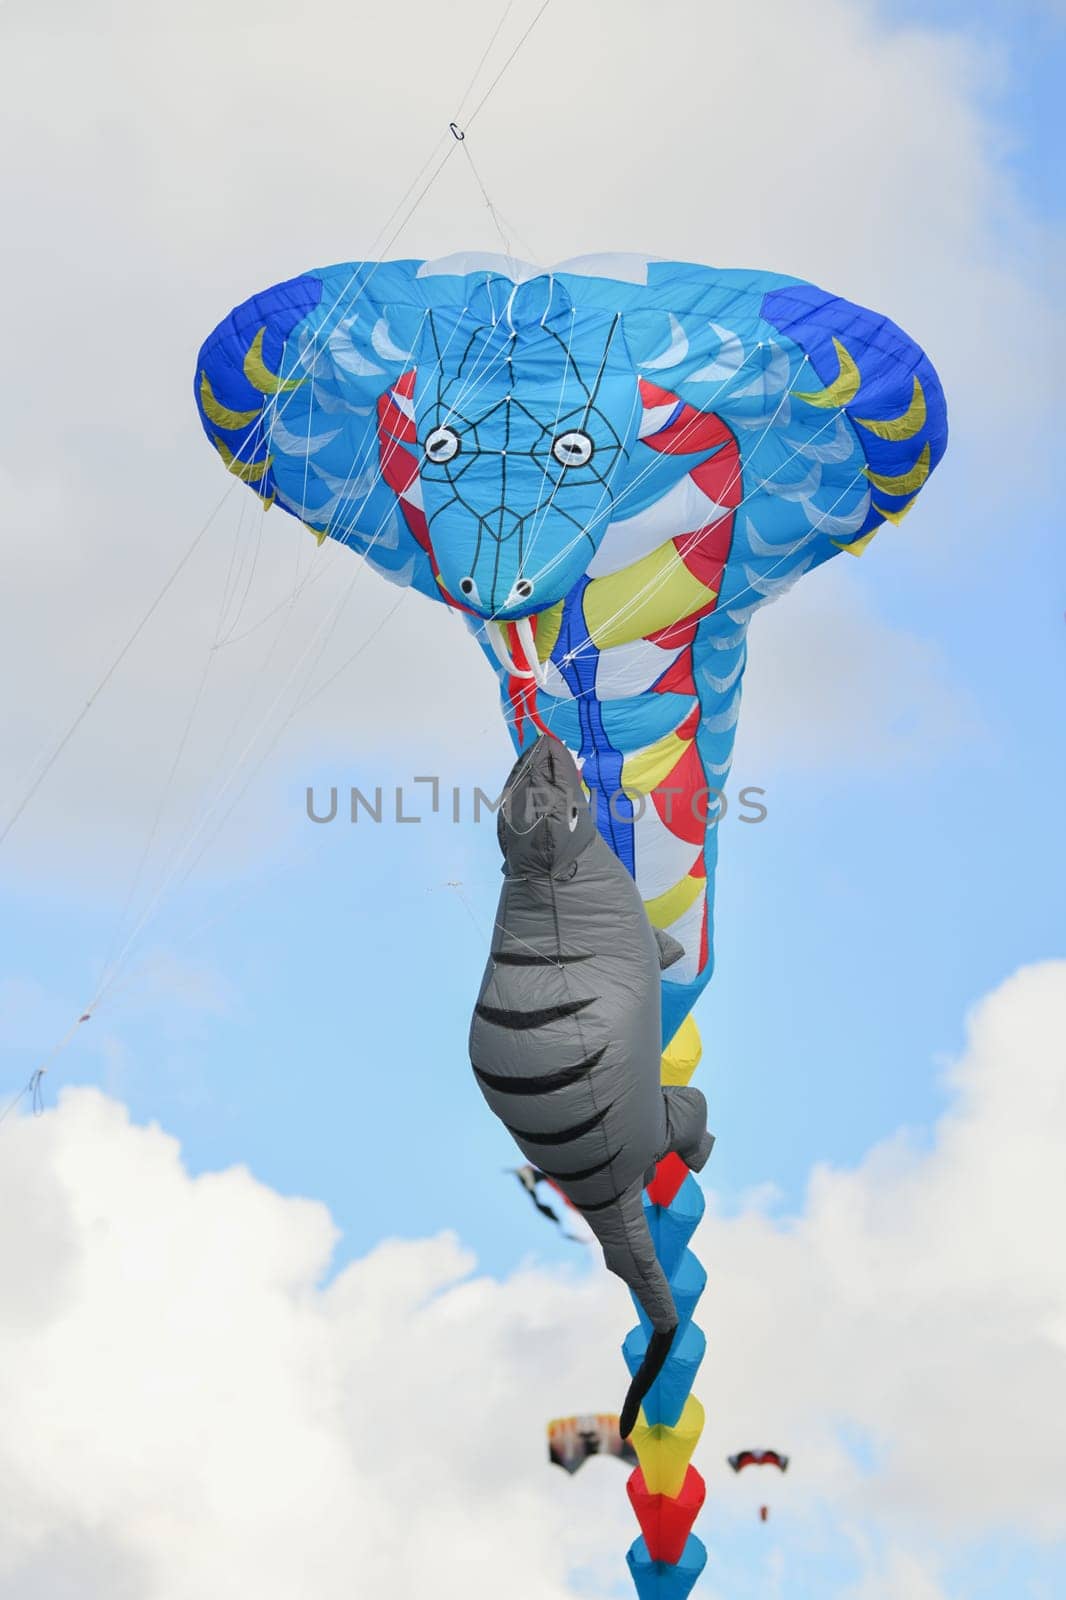 Kite festival.Kites in the sky in a Dieppe by Godi